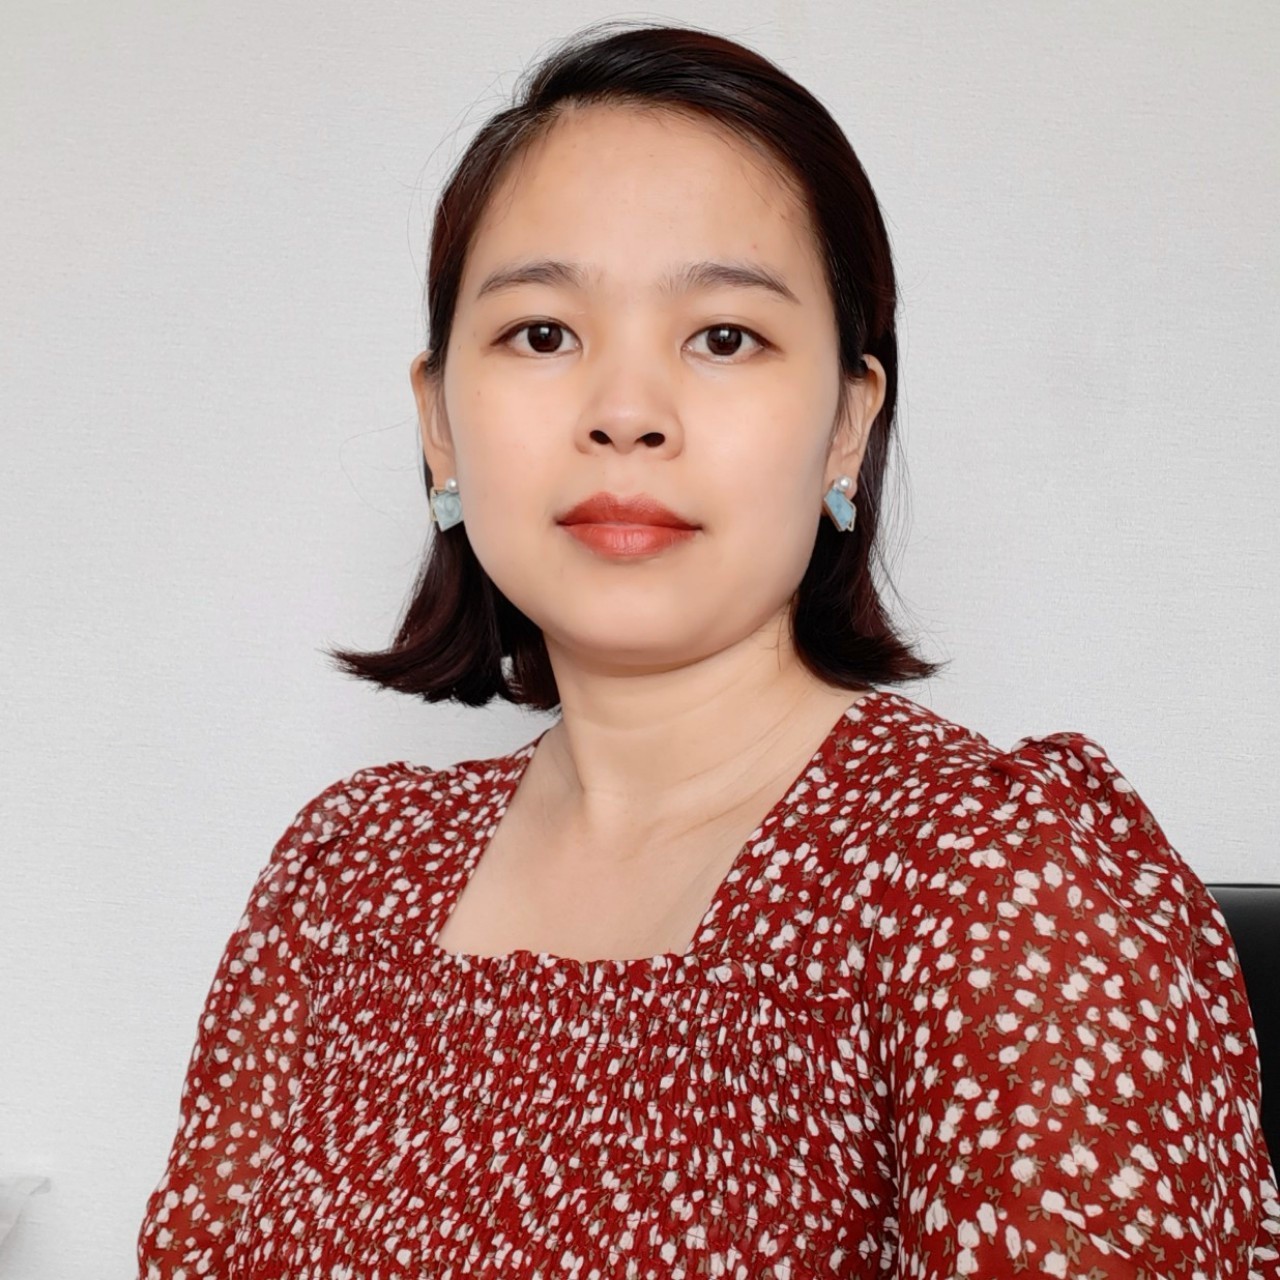 Bác sĩ Phạm Thị Bích Phượng là chuyên gia tâm lý với hơn 10 năm kinh nghiệm trong ngành